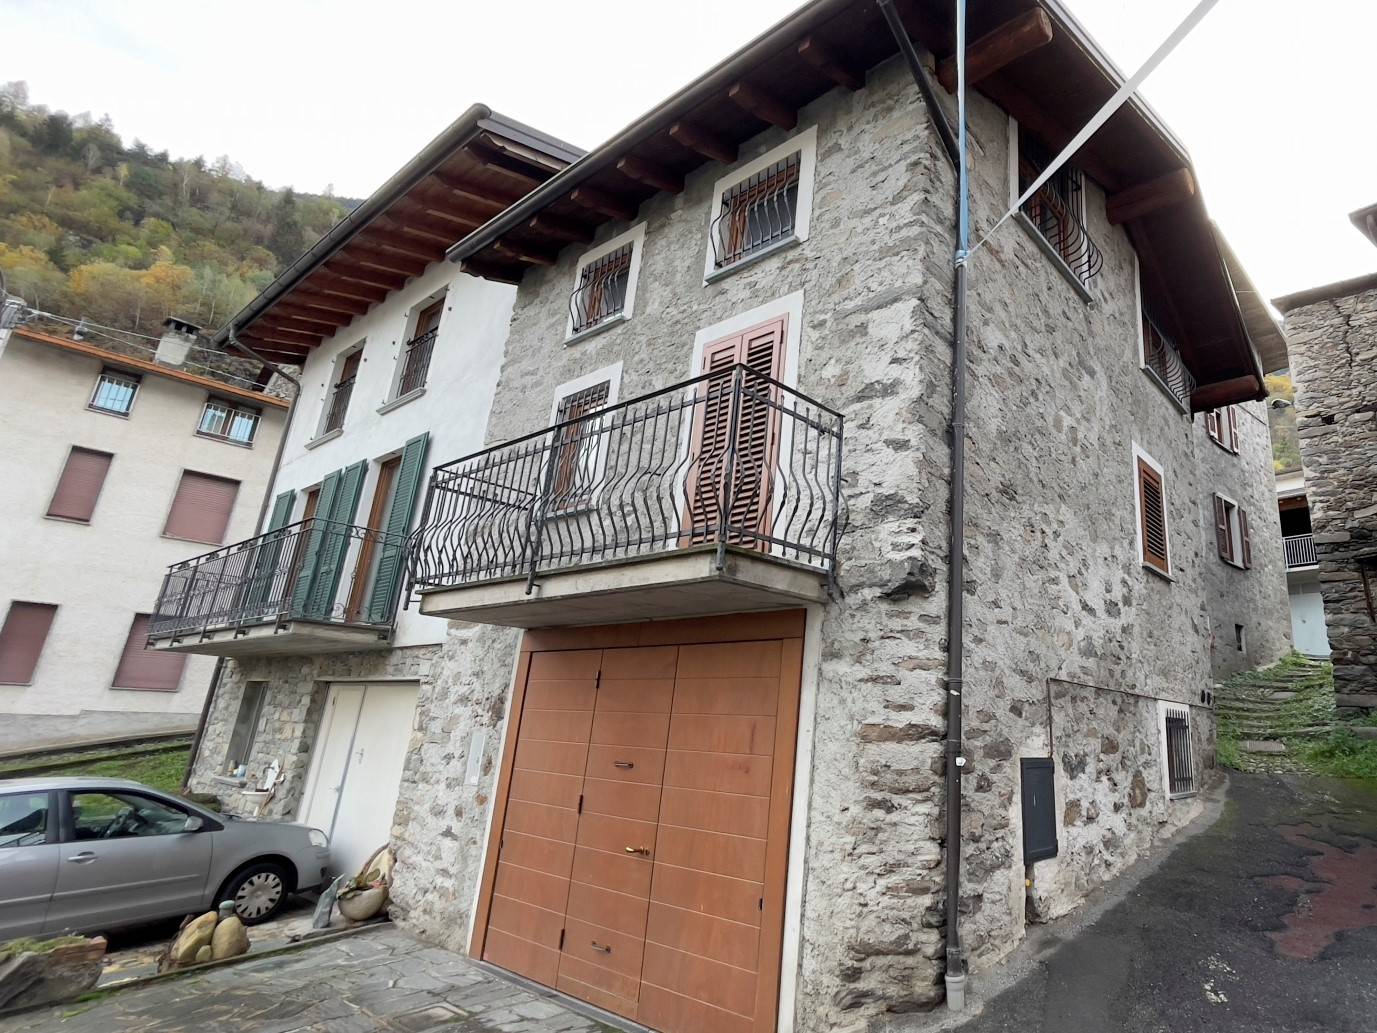 Rustico / Casale in vendita a Colorina, 2 locali, prezzo € 89.000 | CambioCasa.it